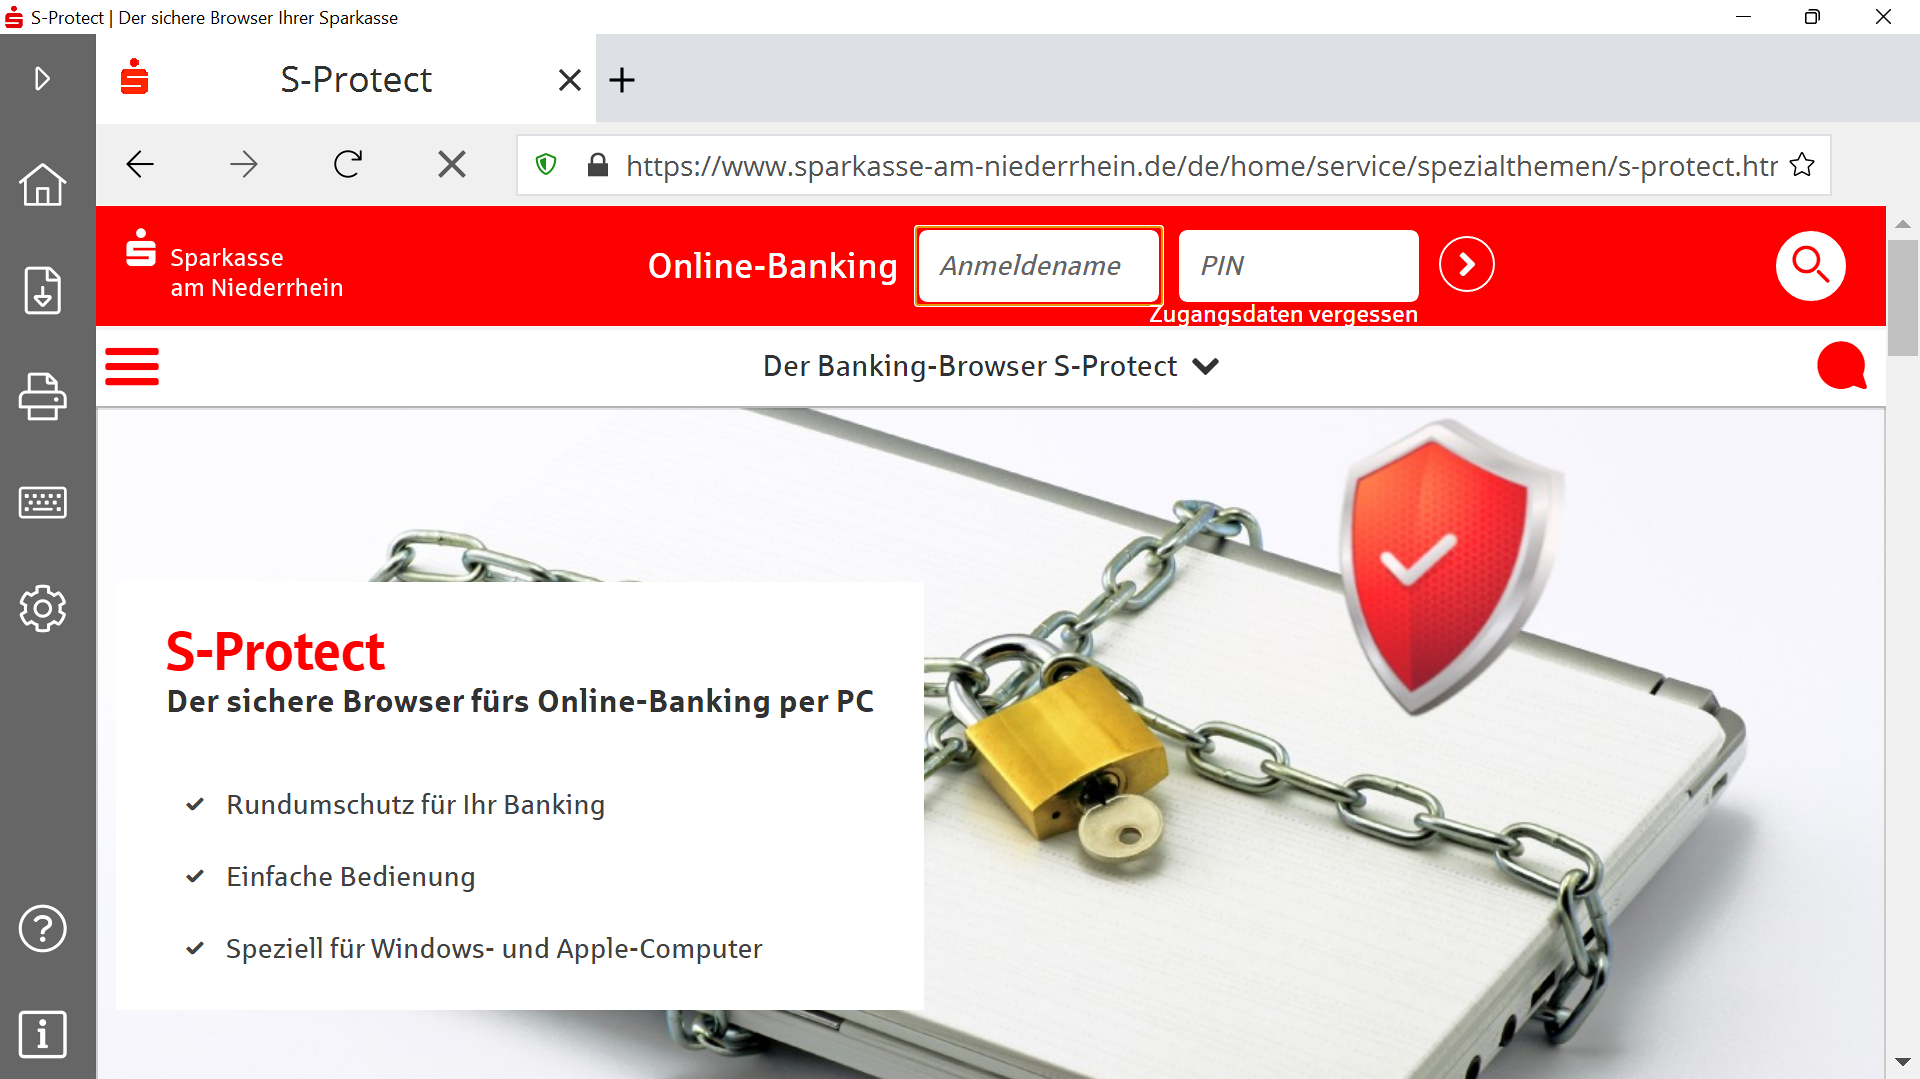 S-Protect: c't entdeckt Sicherheitsmängel in Banking-Software der Sparkasse  | heise online